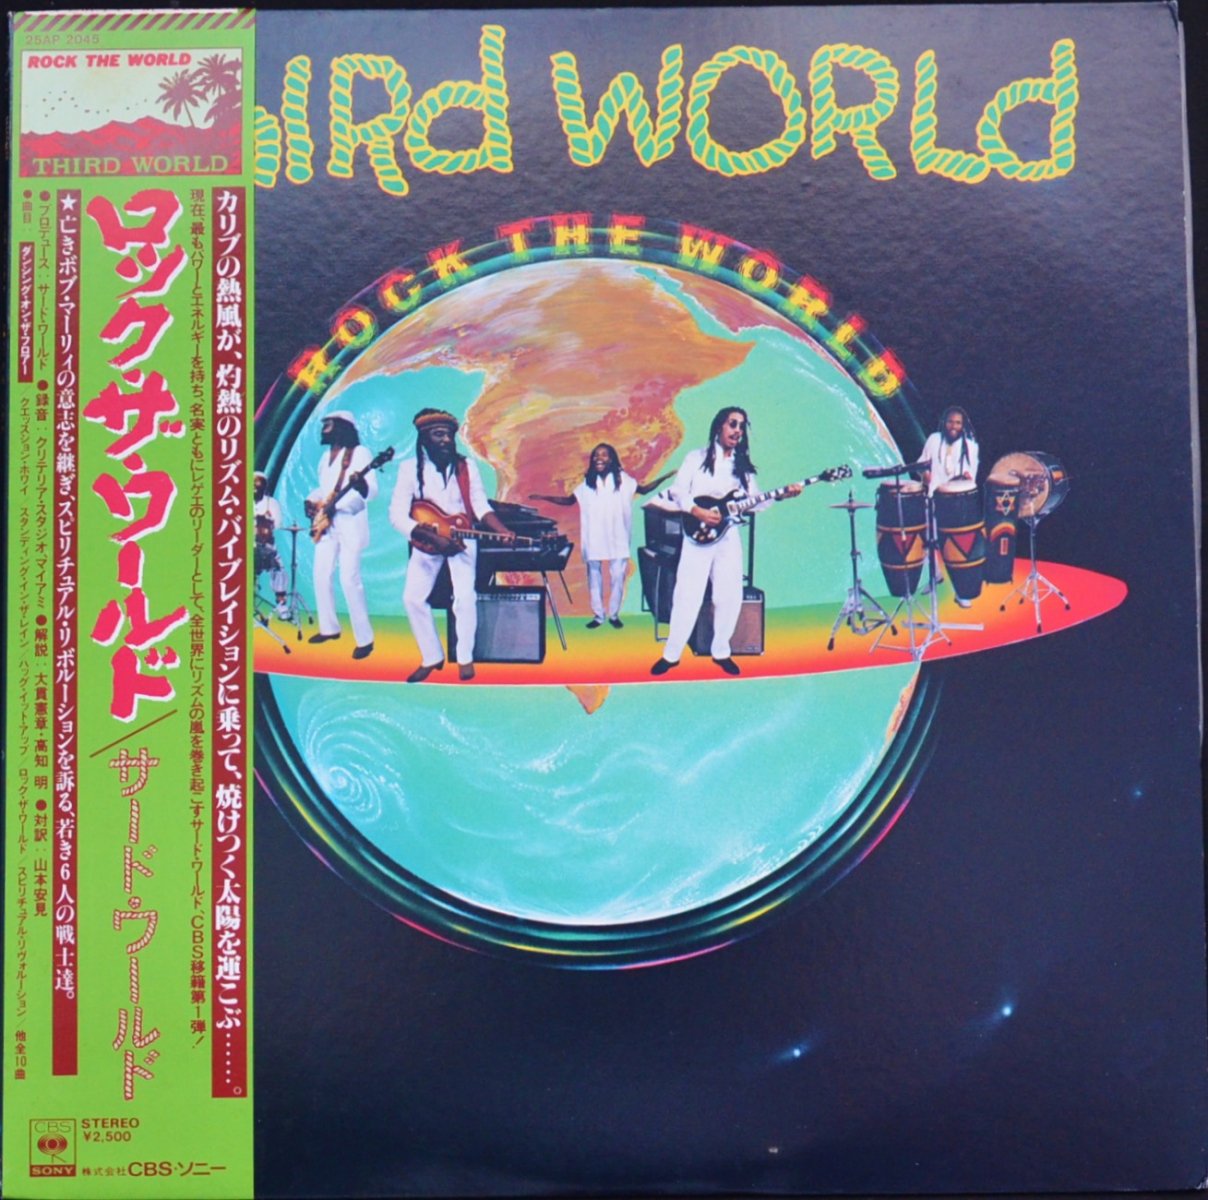 サード・ワールド THIRD WORLD / ロック・ザ・ワールド ROCK THE WORLD